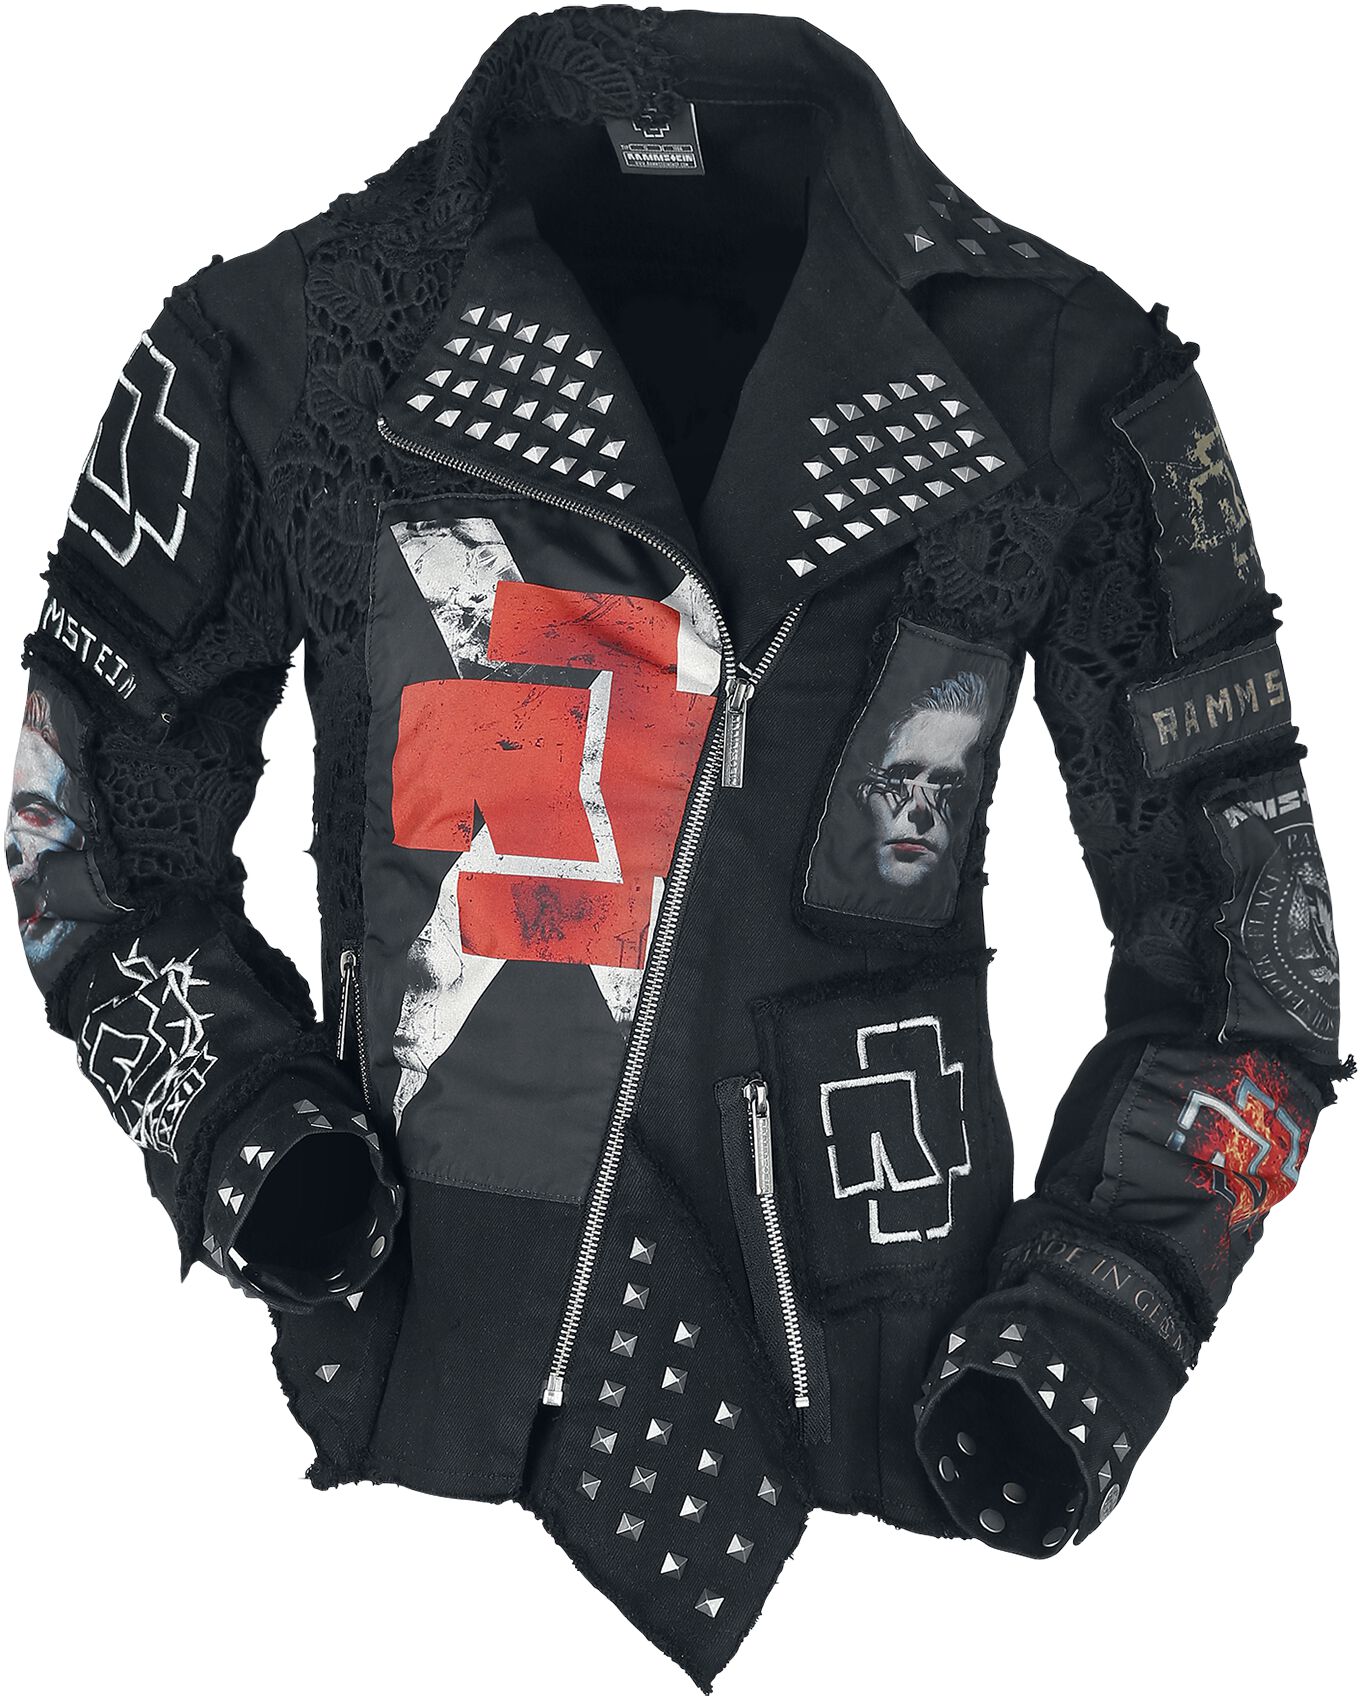 Veste mi-saison de Rammstein - Metal Patches - S à XXL - pour Femme - noir